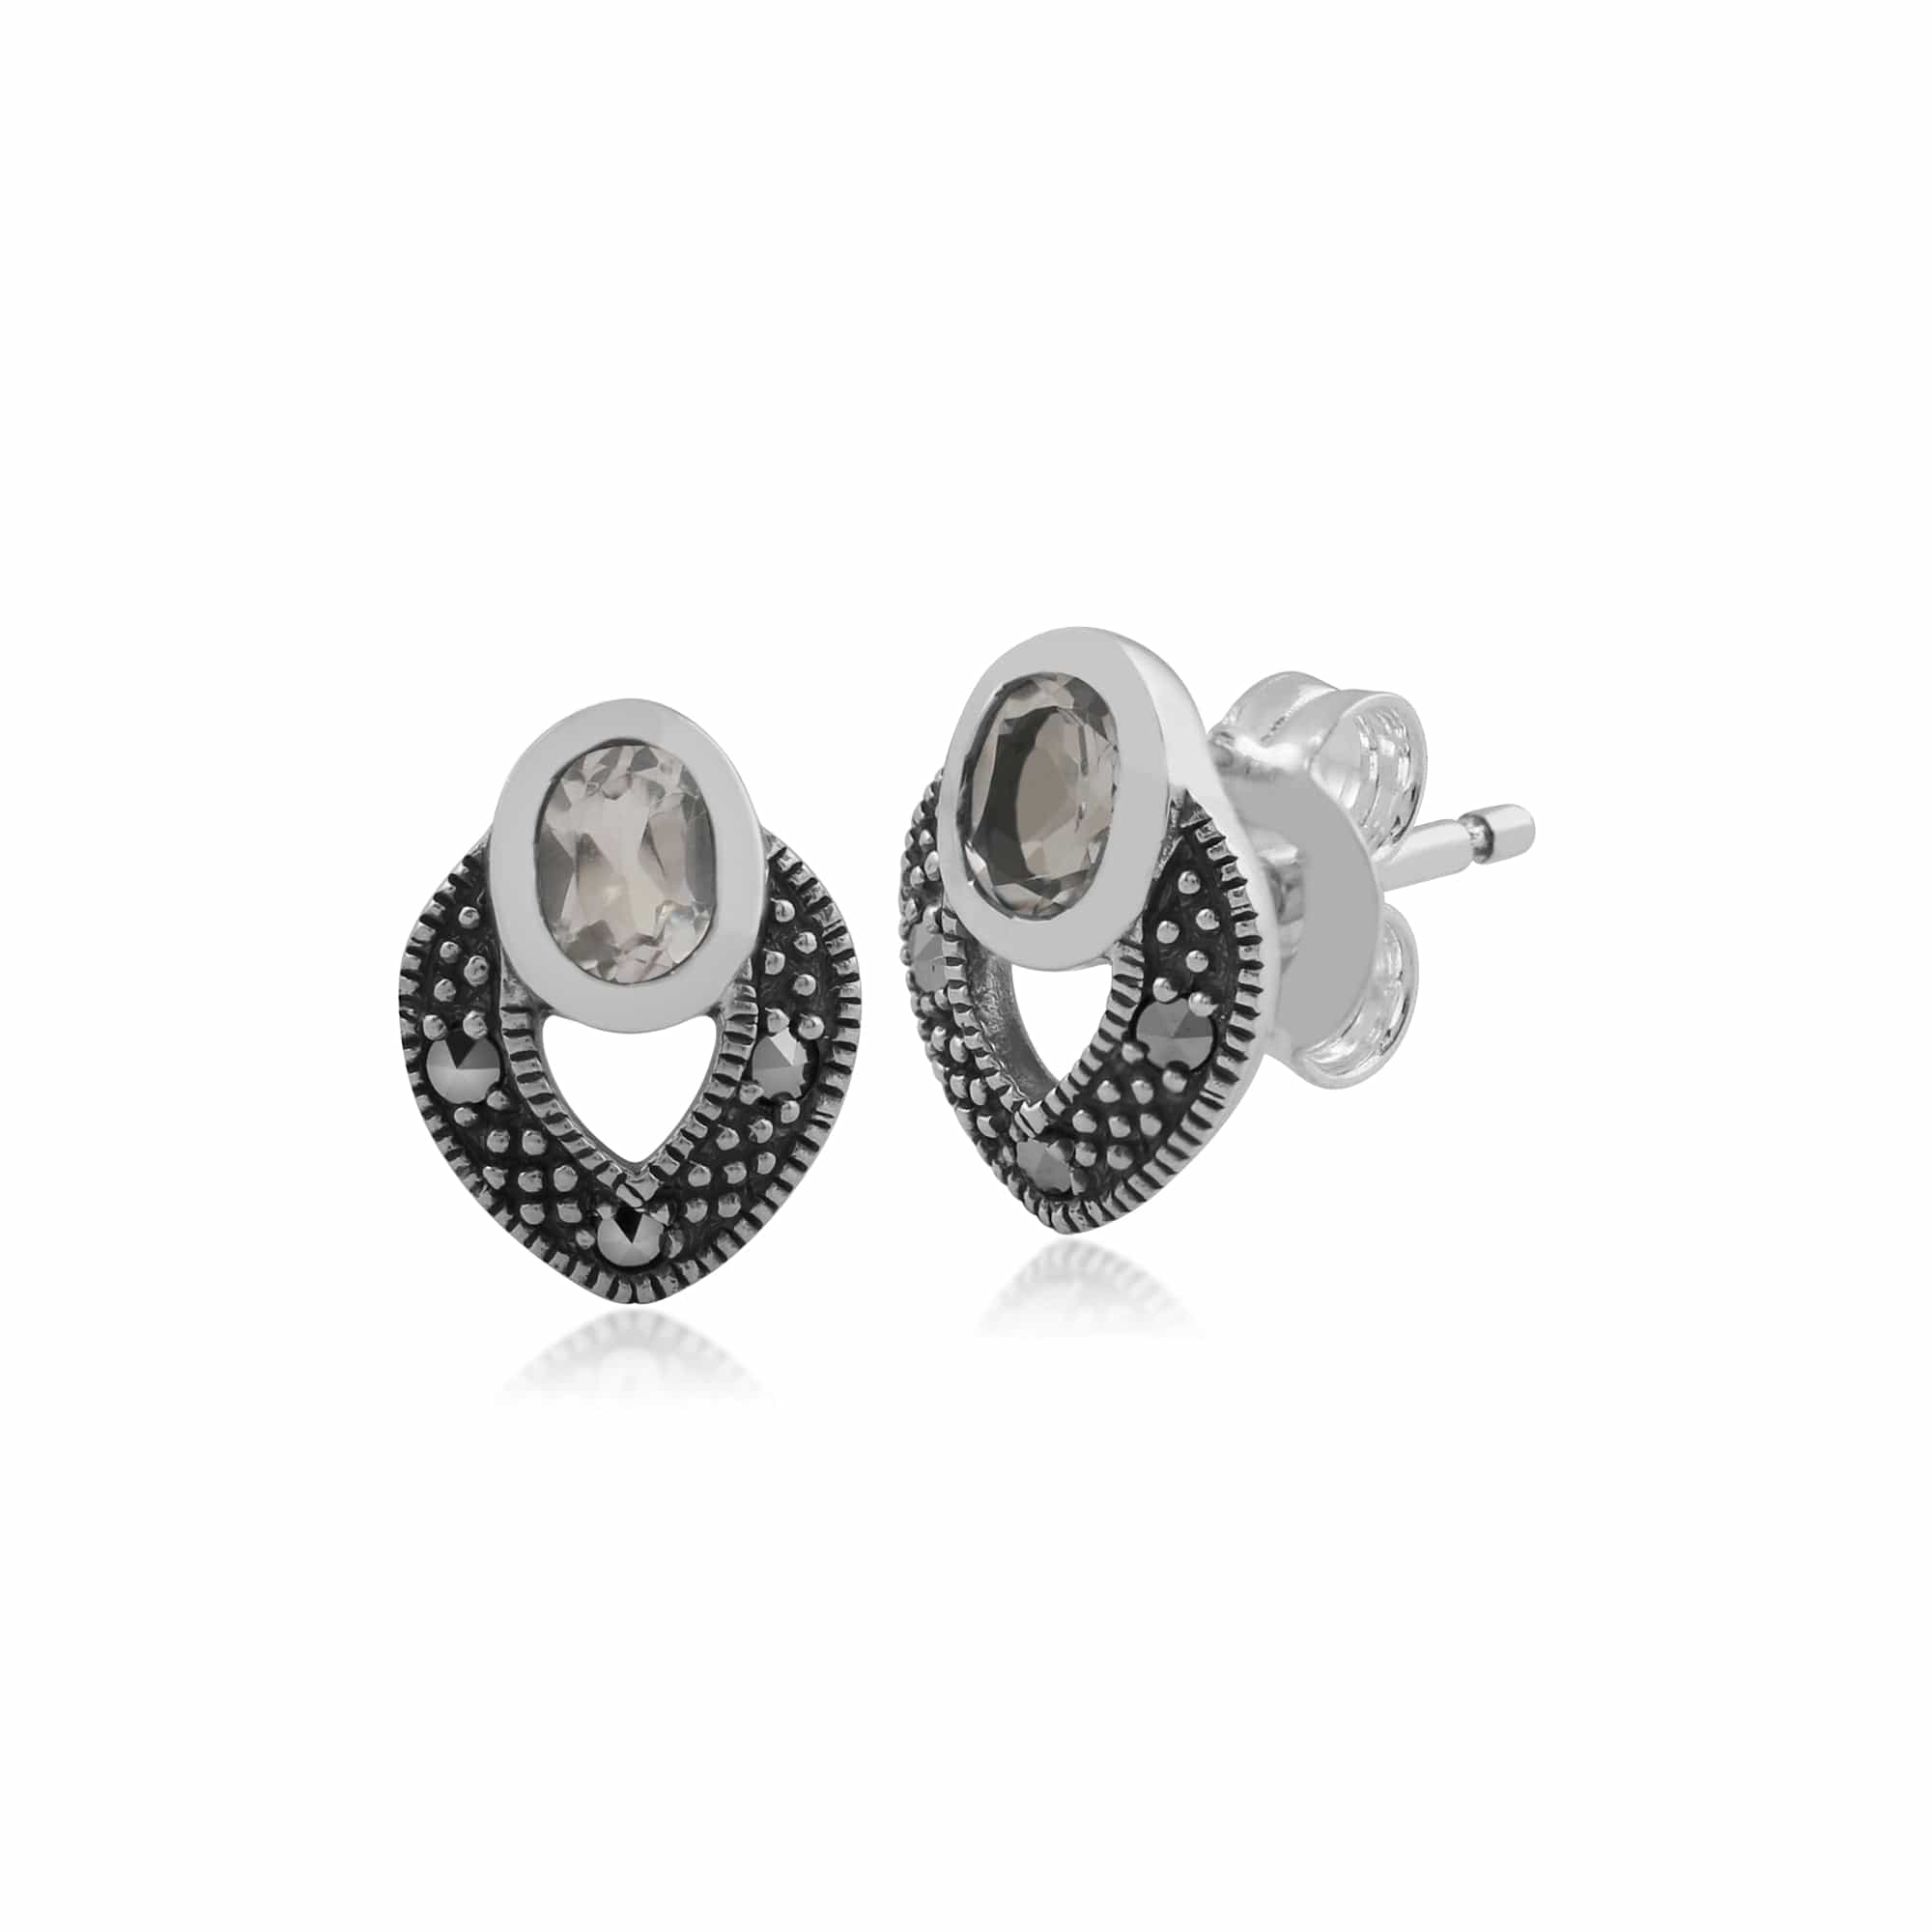 Gemondo Sterling Silver Art Deco Clear Topaz & Marcasite Stud Earrings Image